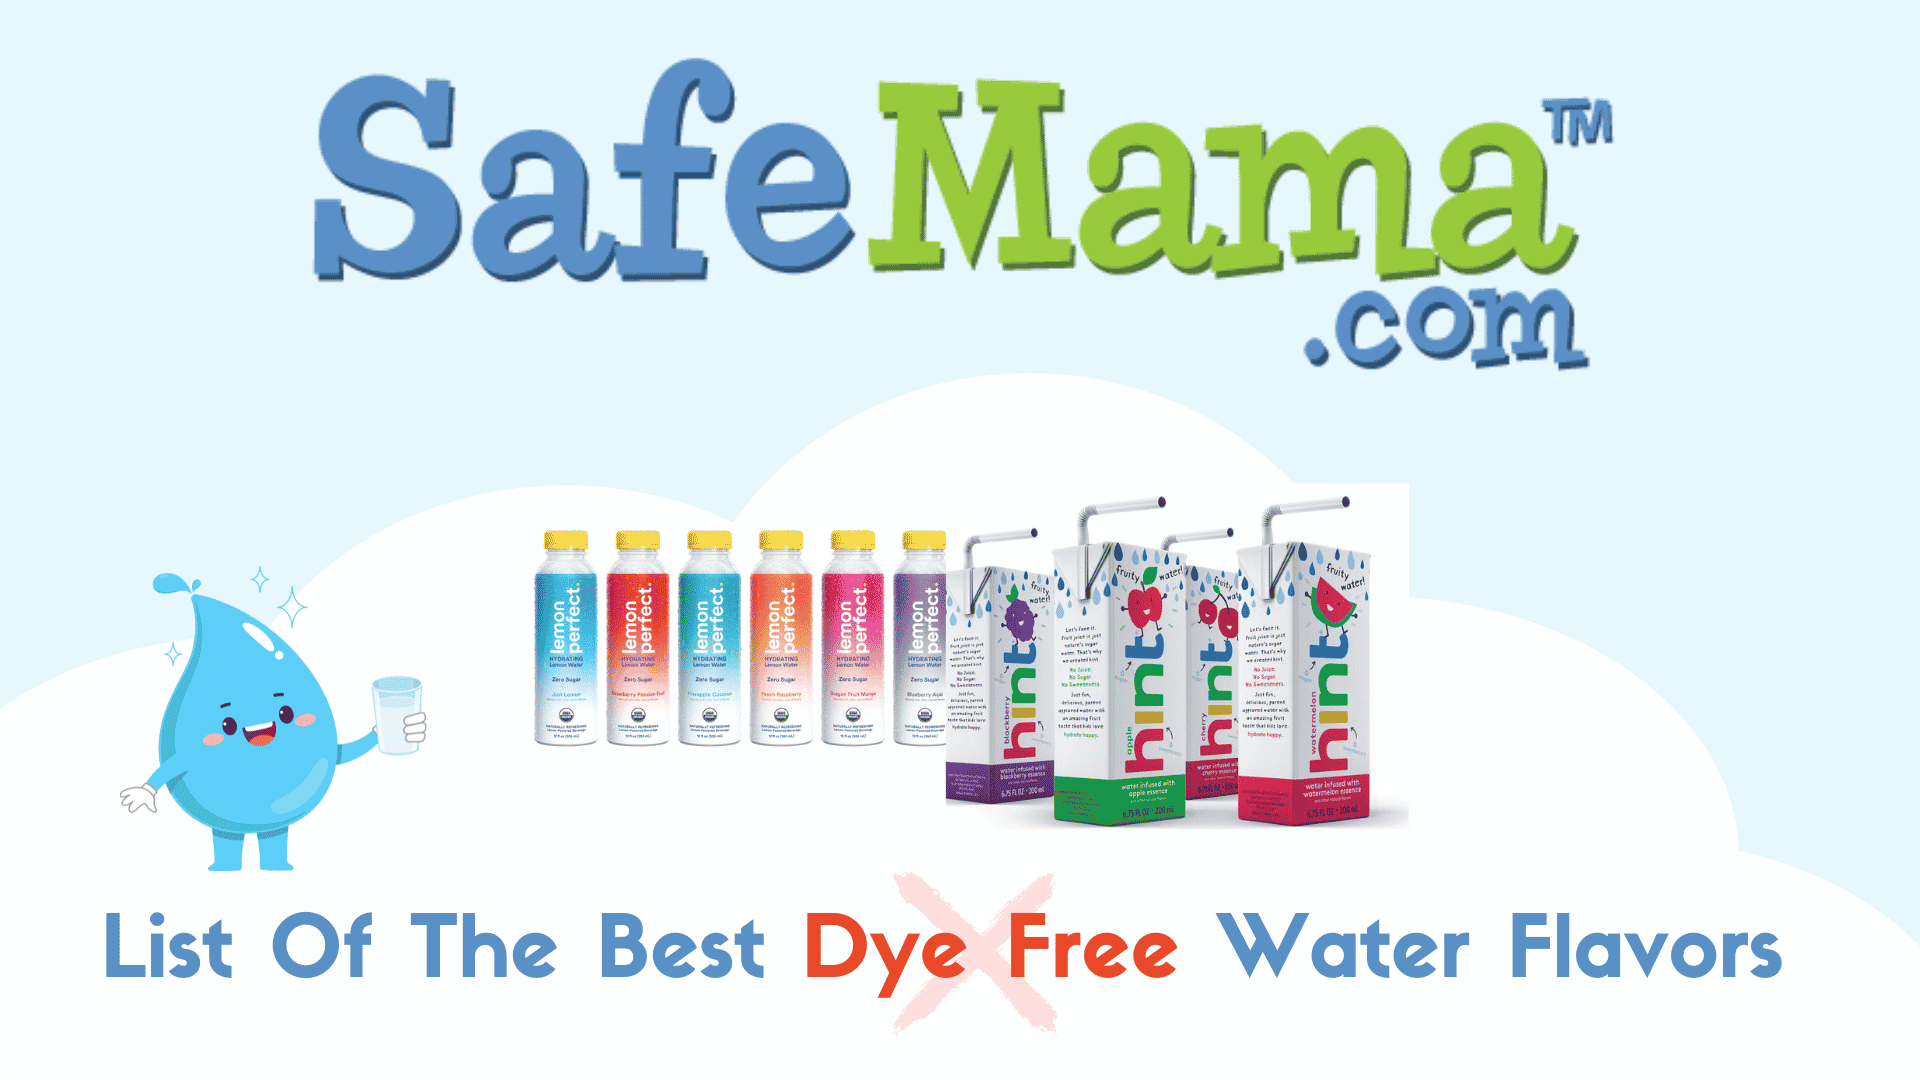 List of Food Dye Free Water Flavors